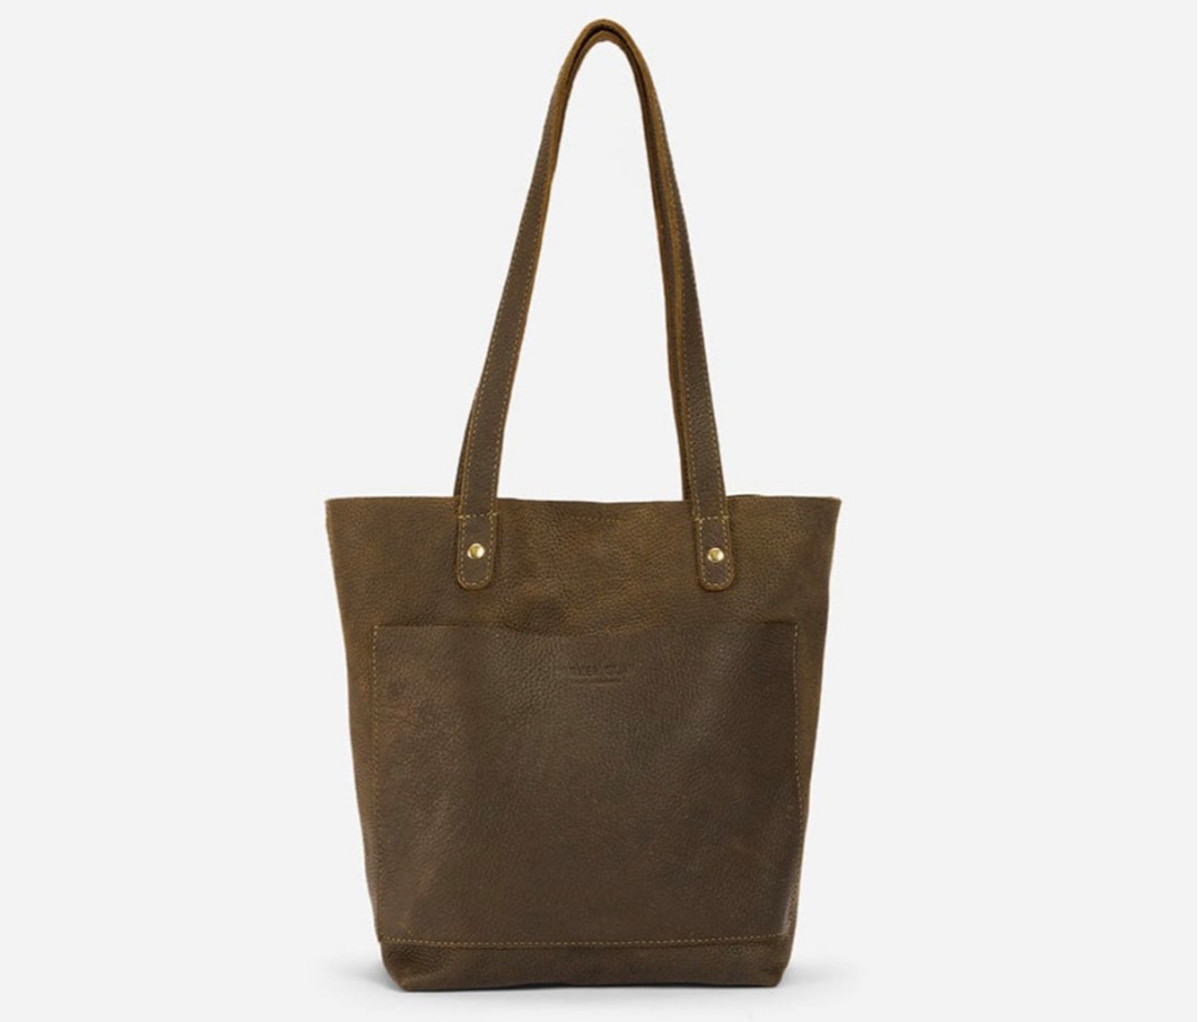 $1500 Louis Vuitton Bag vs $50 Walmart Dupe